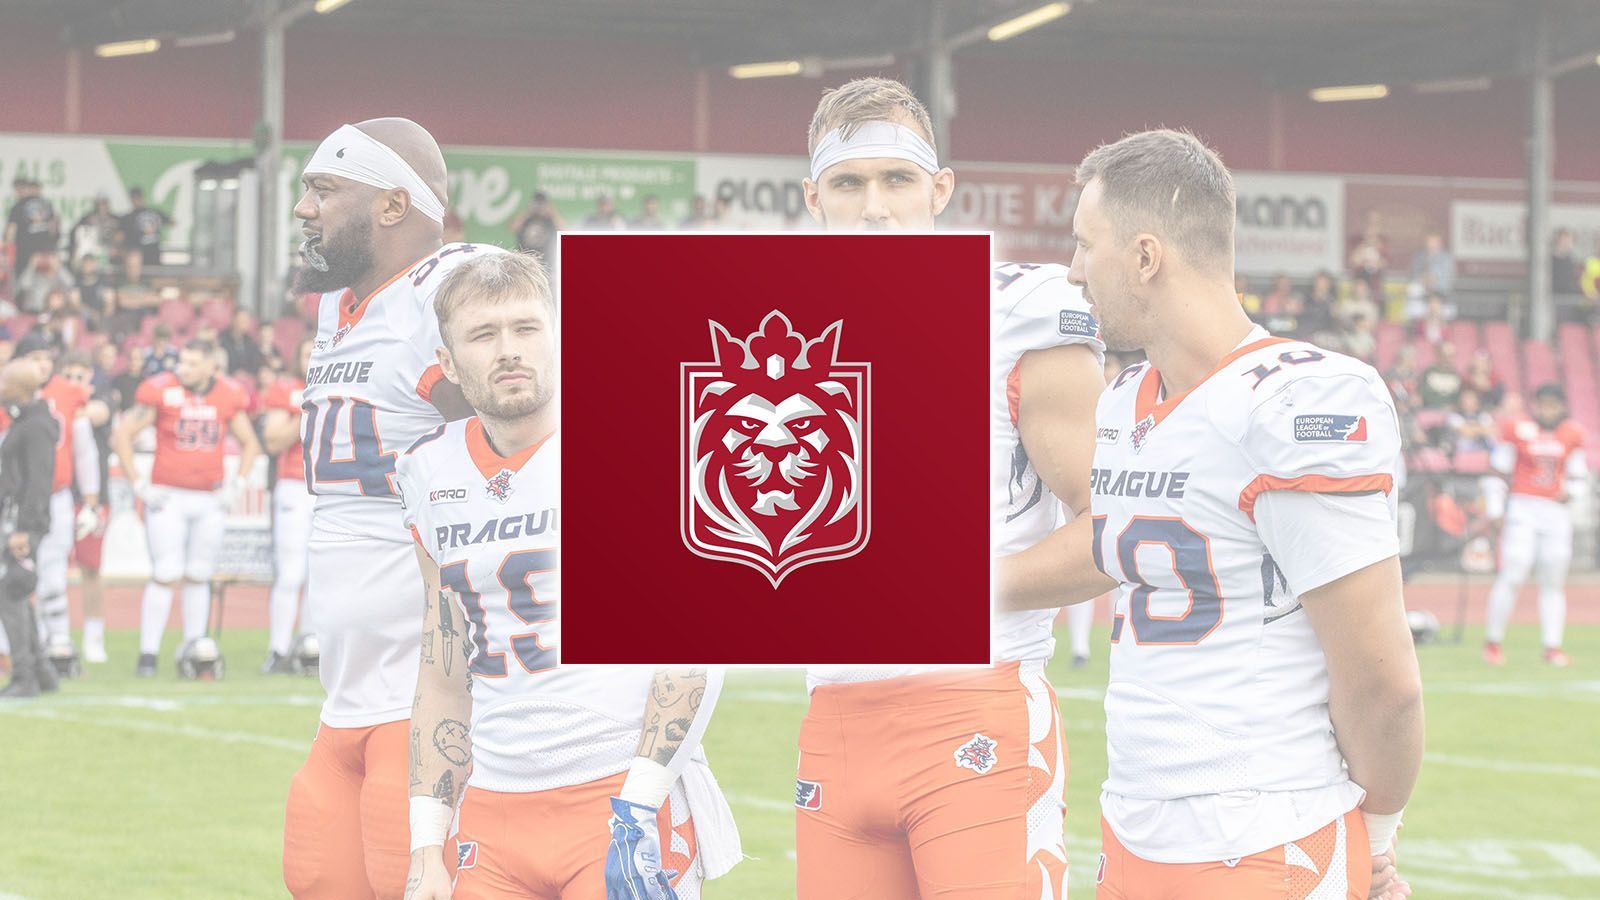 <strong>Prague Lions</strong><br>Bei den Prague Lions ist es zu einem Rebranding gekommen. Das Logo sowie die Farbe der Trikots wurden angepasst. Die Farben Weiß und Orange wurden durch ein dunkles Rot und Weiß ersetzt.